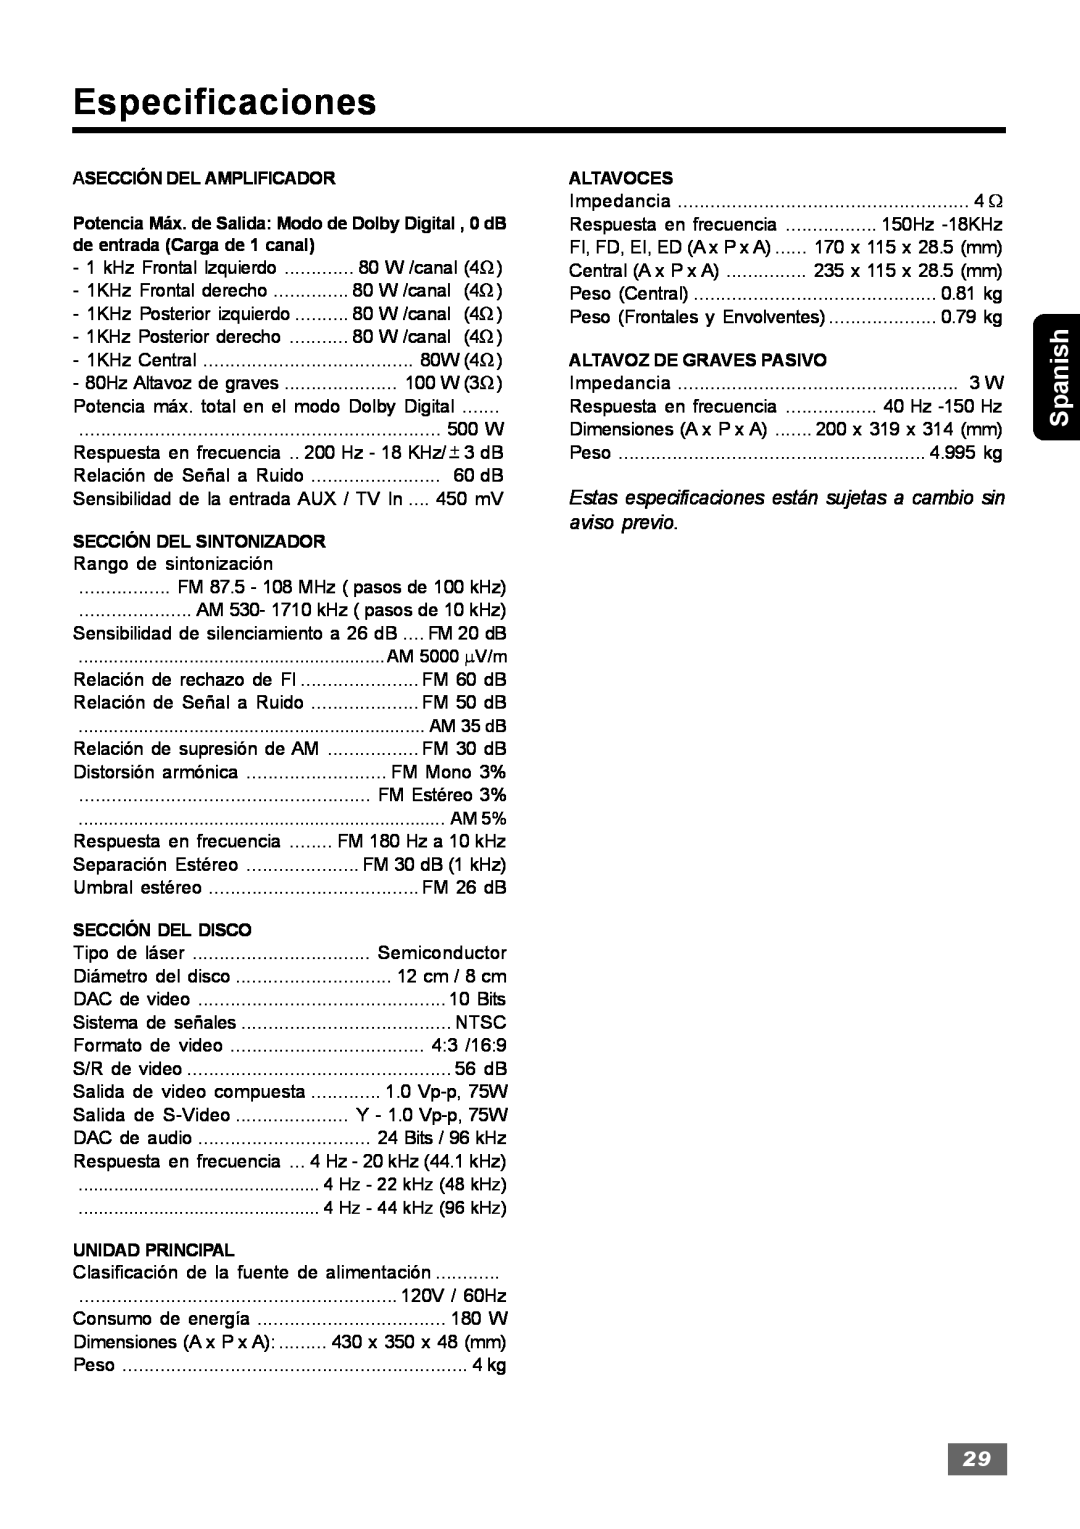 Insignia IS-HTIB102731 owner manual Especificaciones, Spanish 